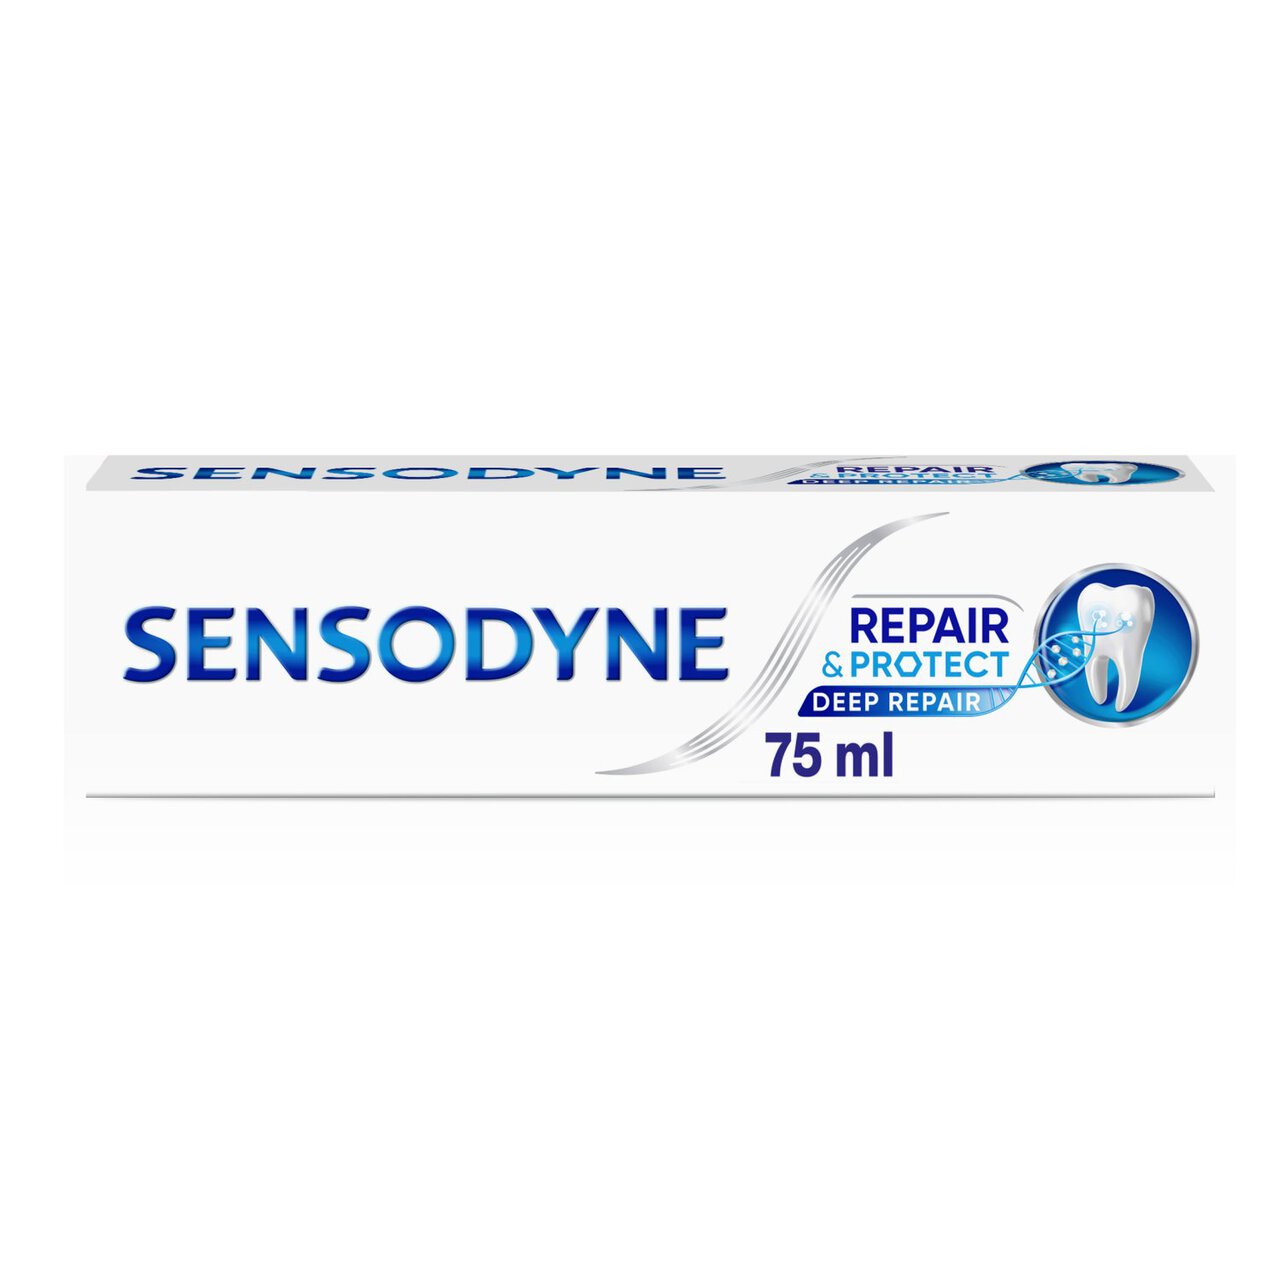 Sensodyne Repair & Protect Deep Repair Sensitive Toothpaste 75ml